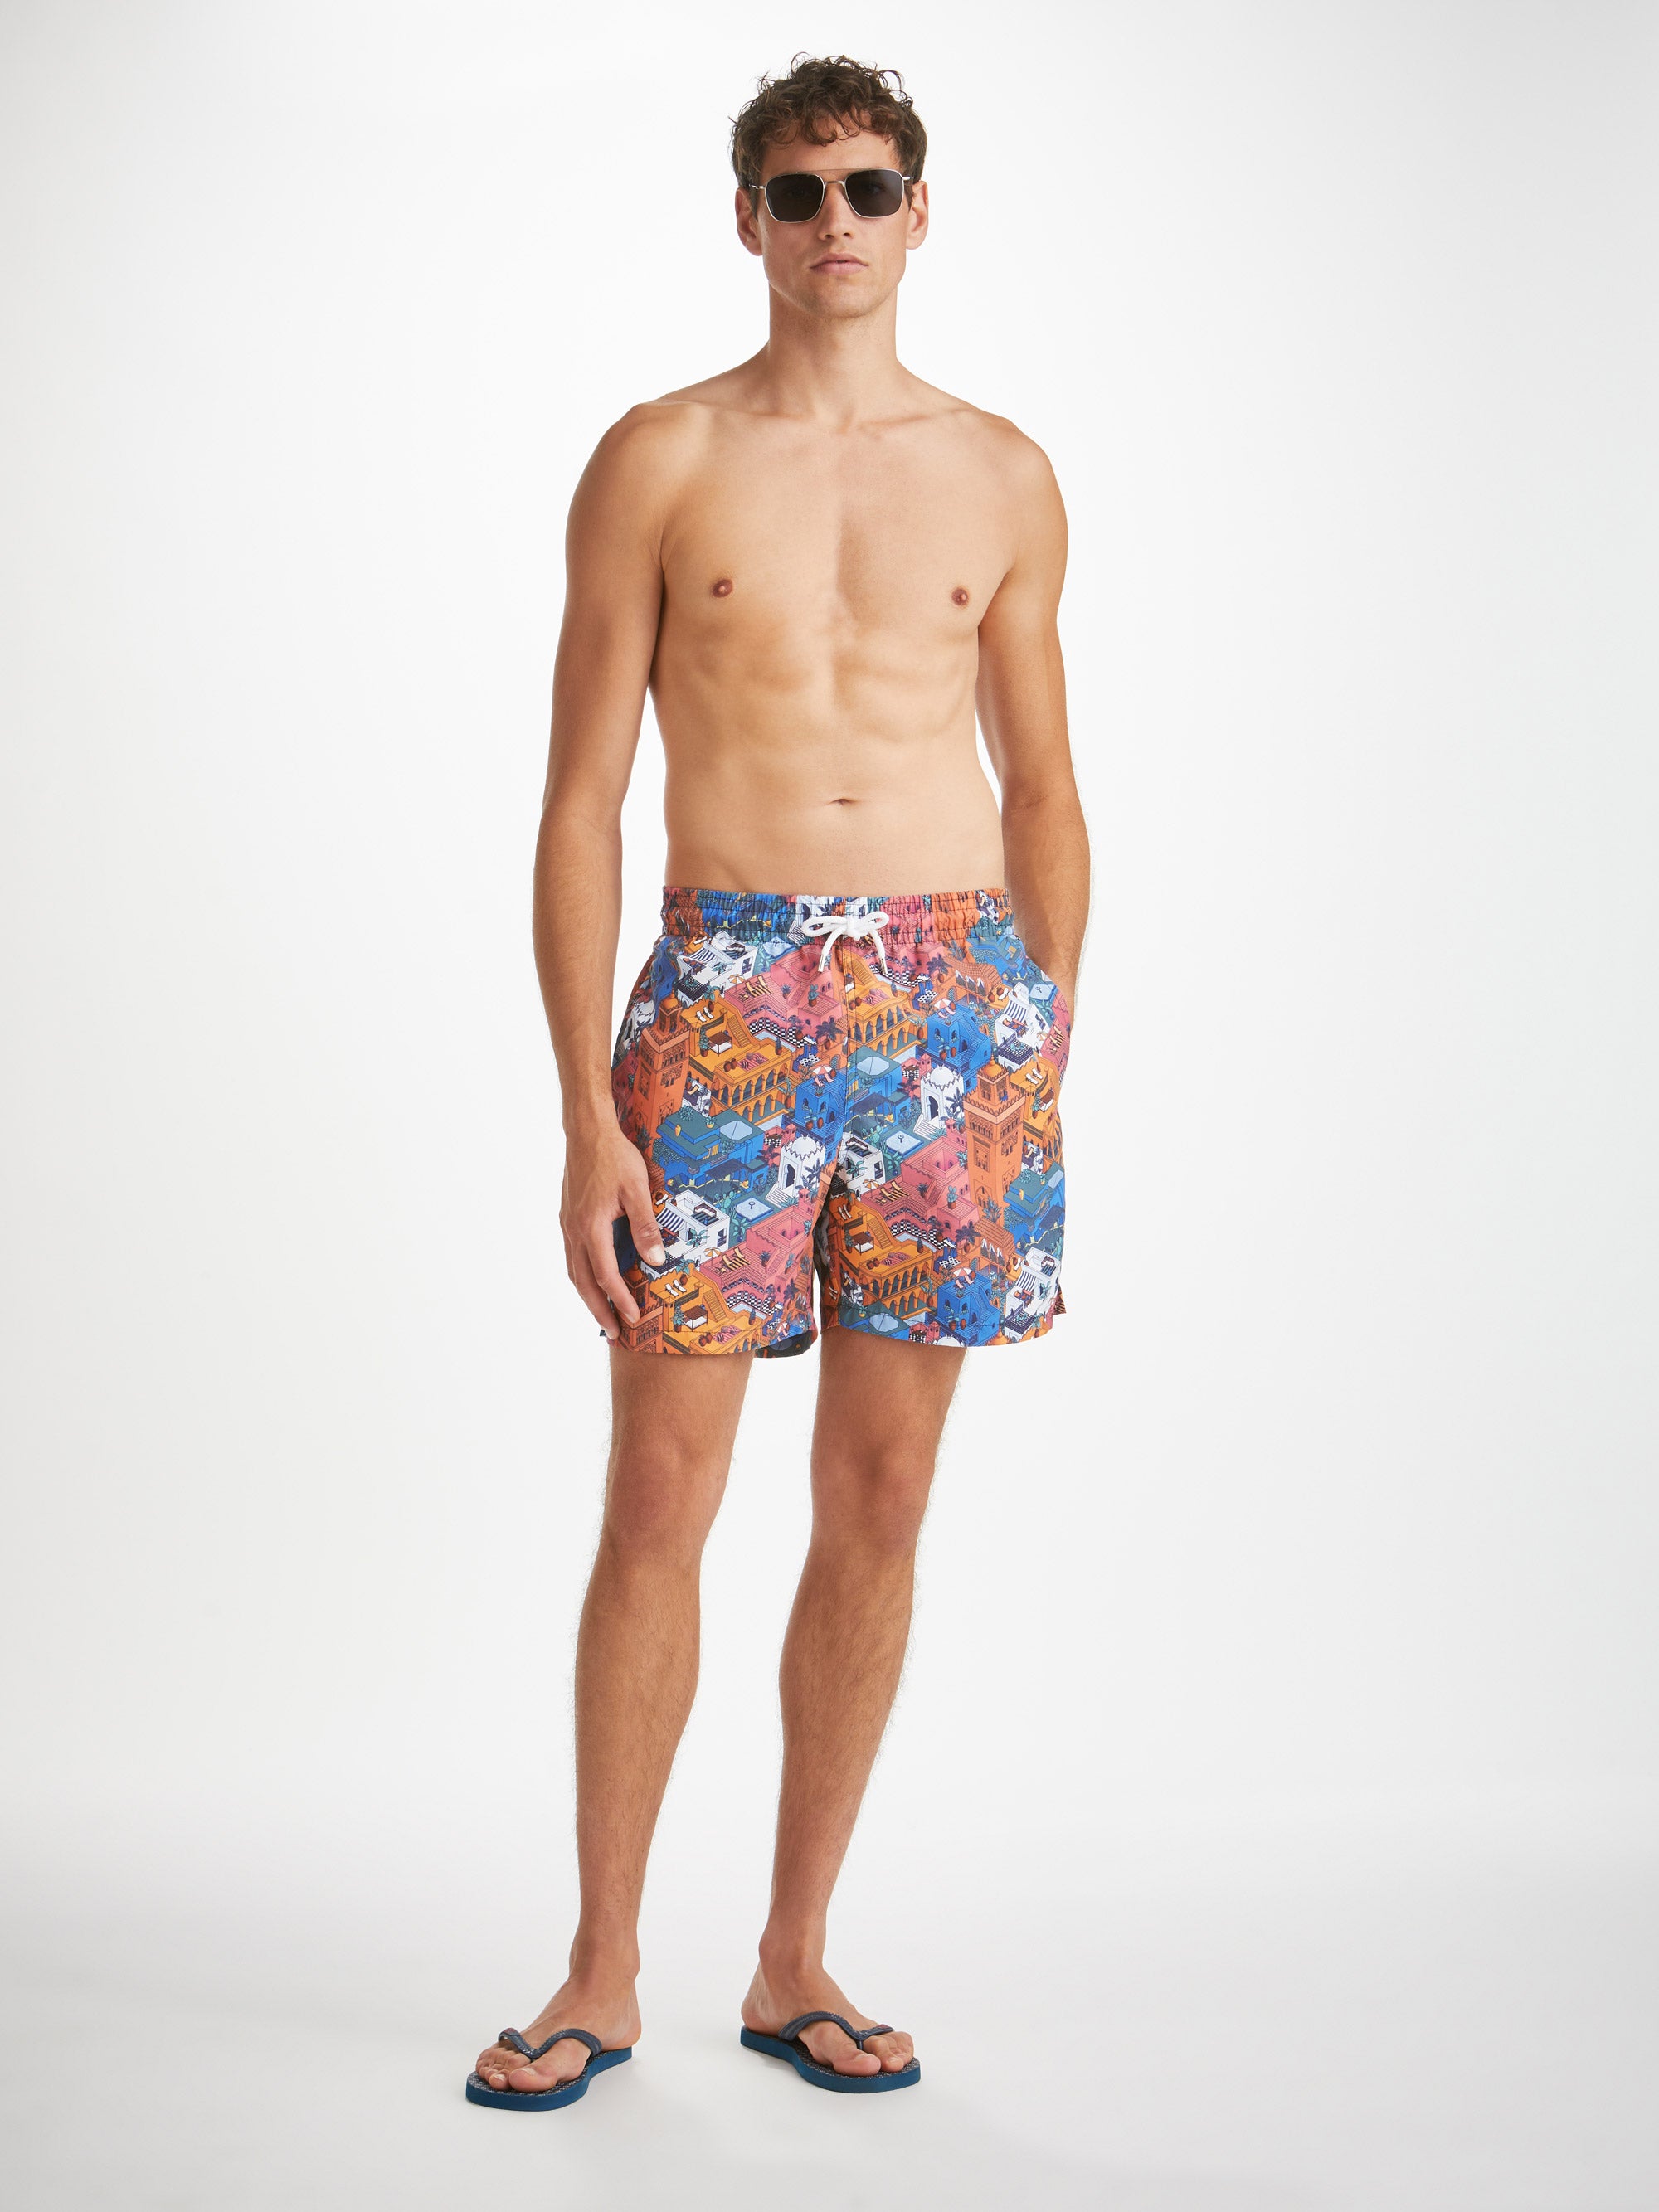 Men's Swim Shorts Maui 60 Multi